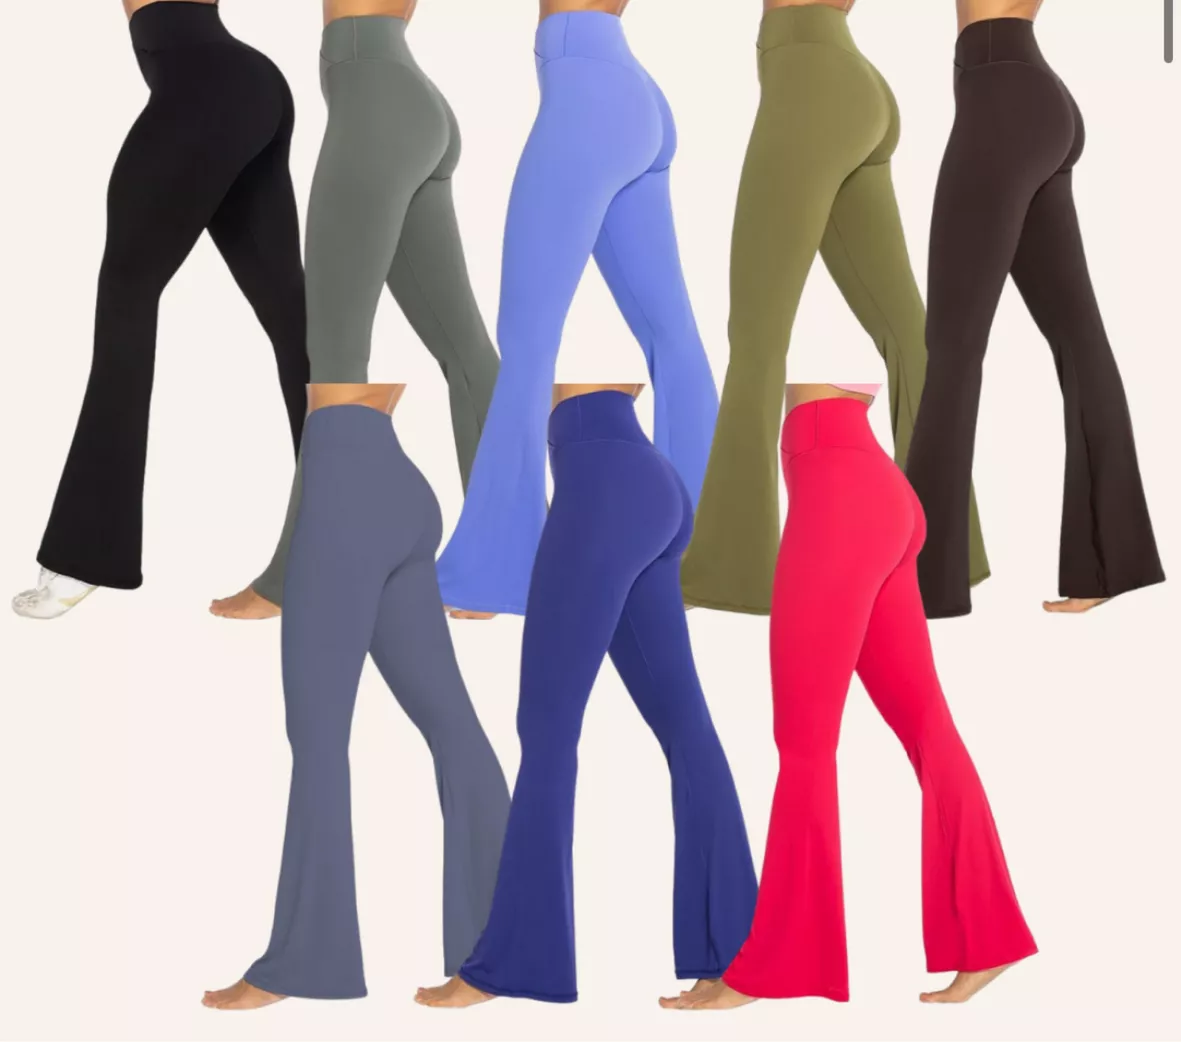  Sunzel Flare Leggings, Crossover Yoga Pants